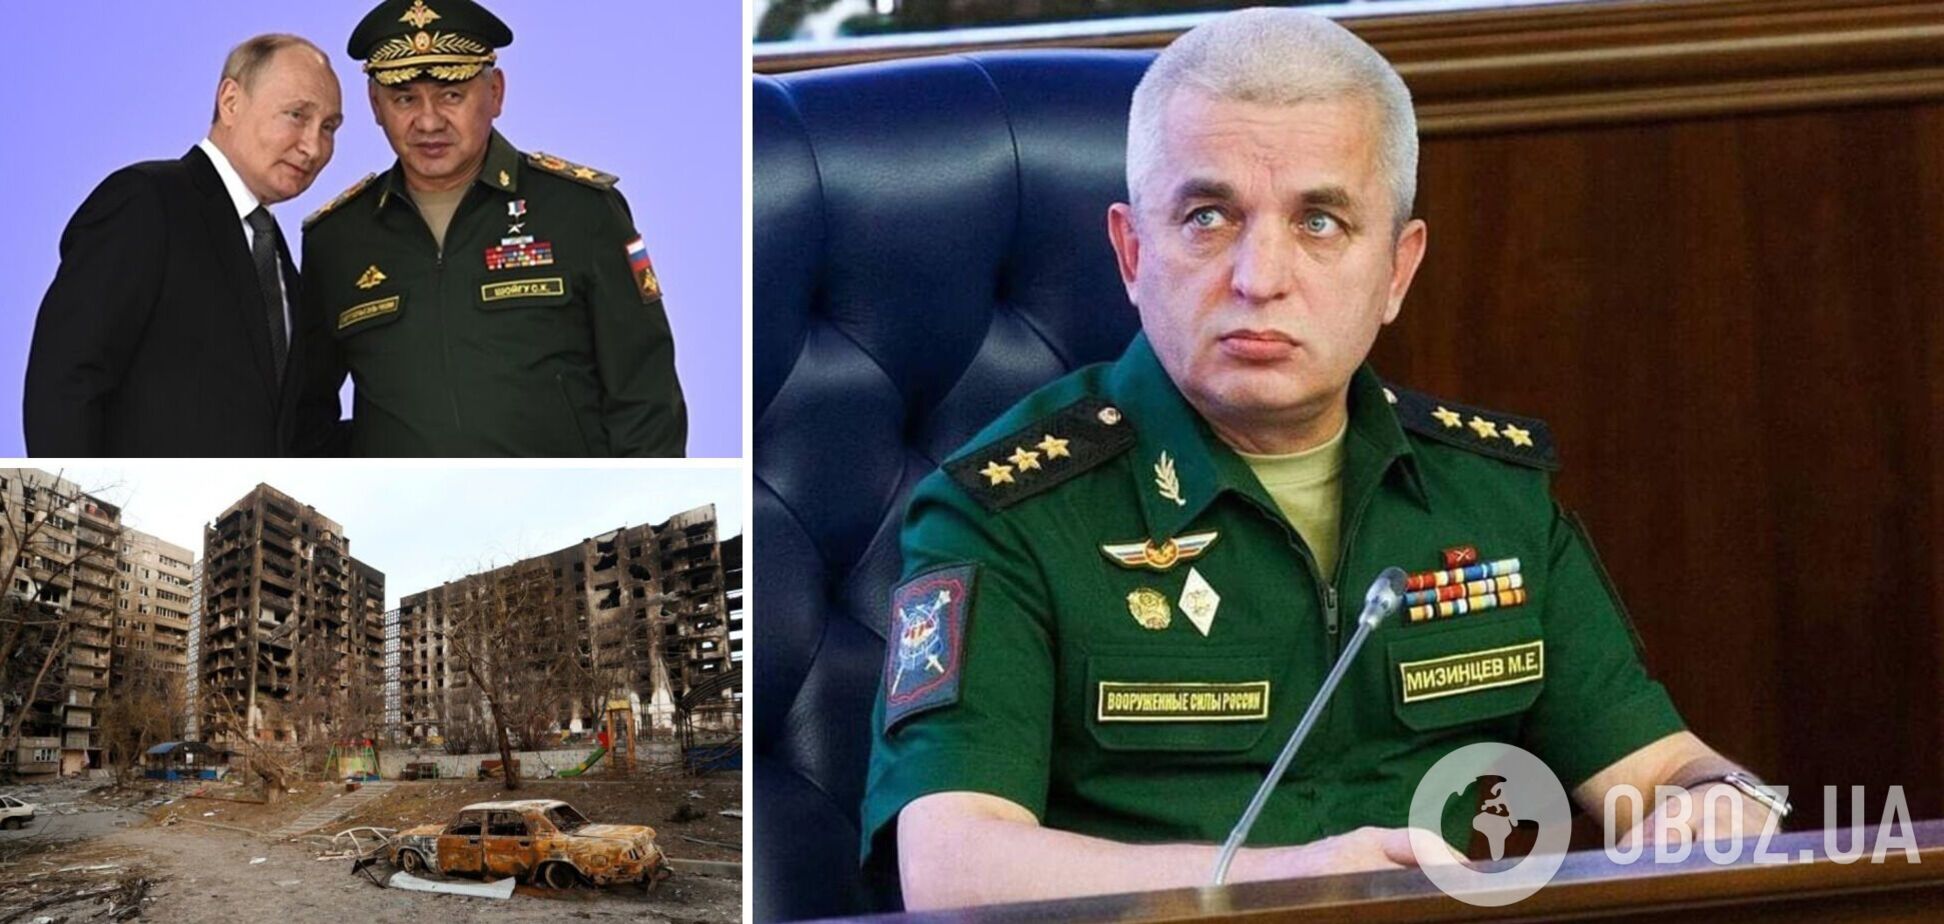 'Мясника' Мизинцева уволили с должности замминистра обороны РФ: он ответственен за бомбардировки Мариуполя